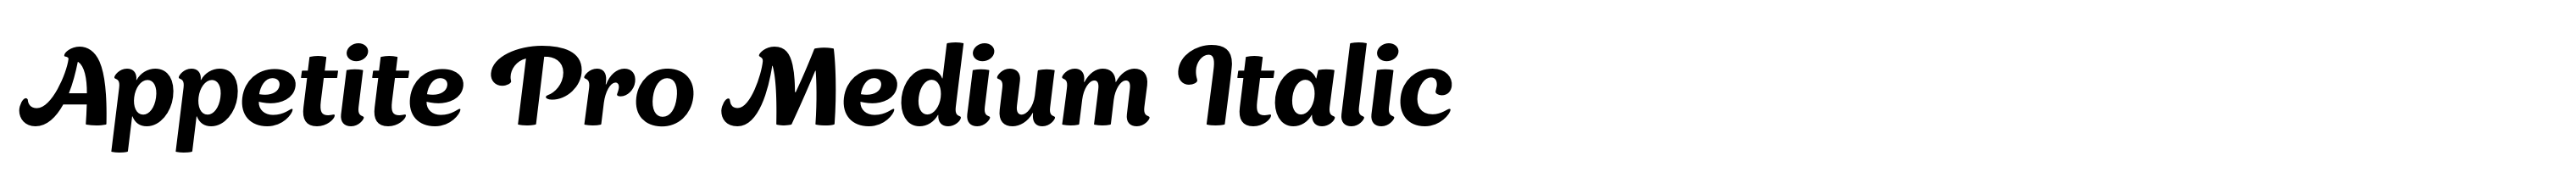 Appetite Pro Medium Italic